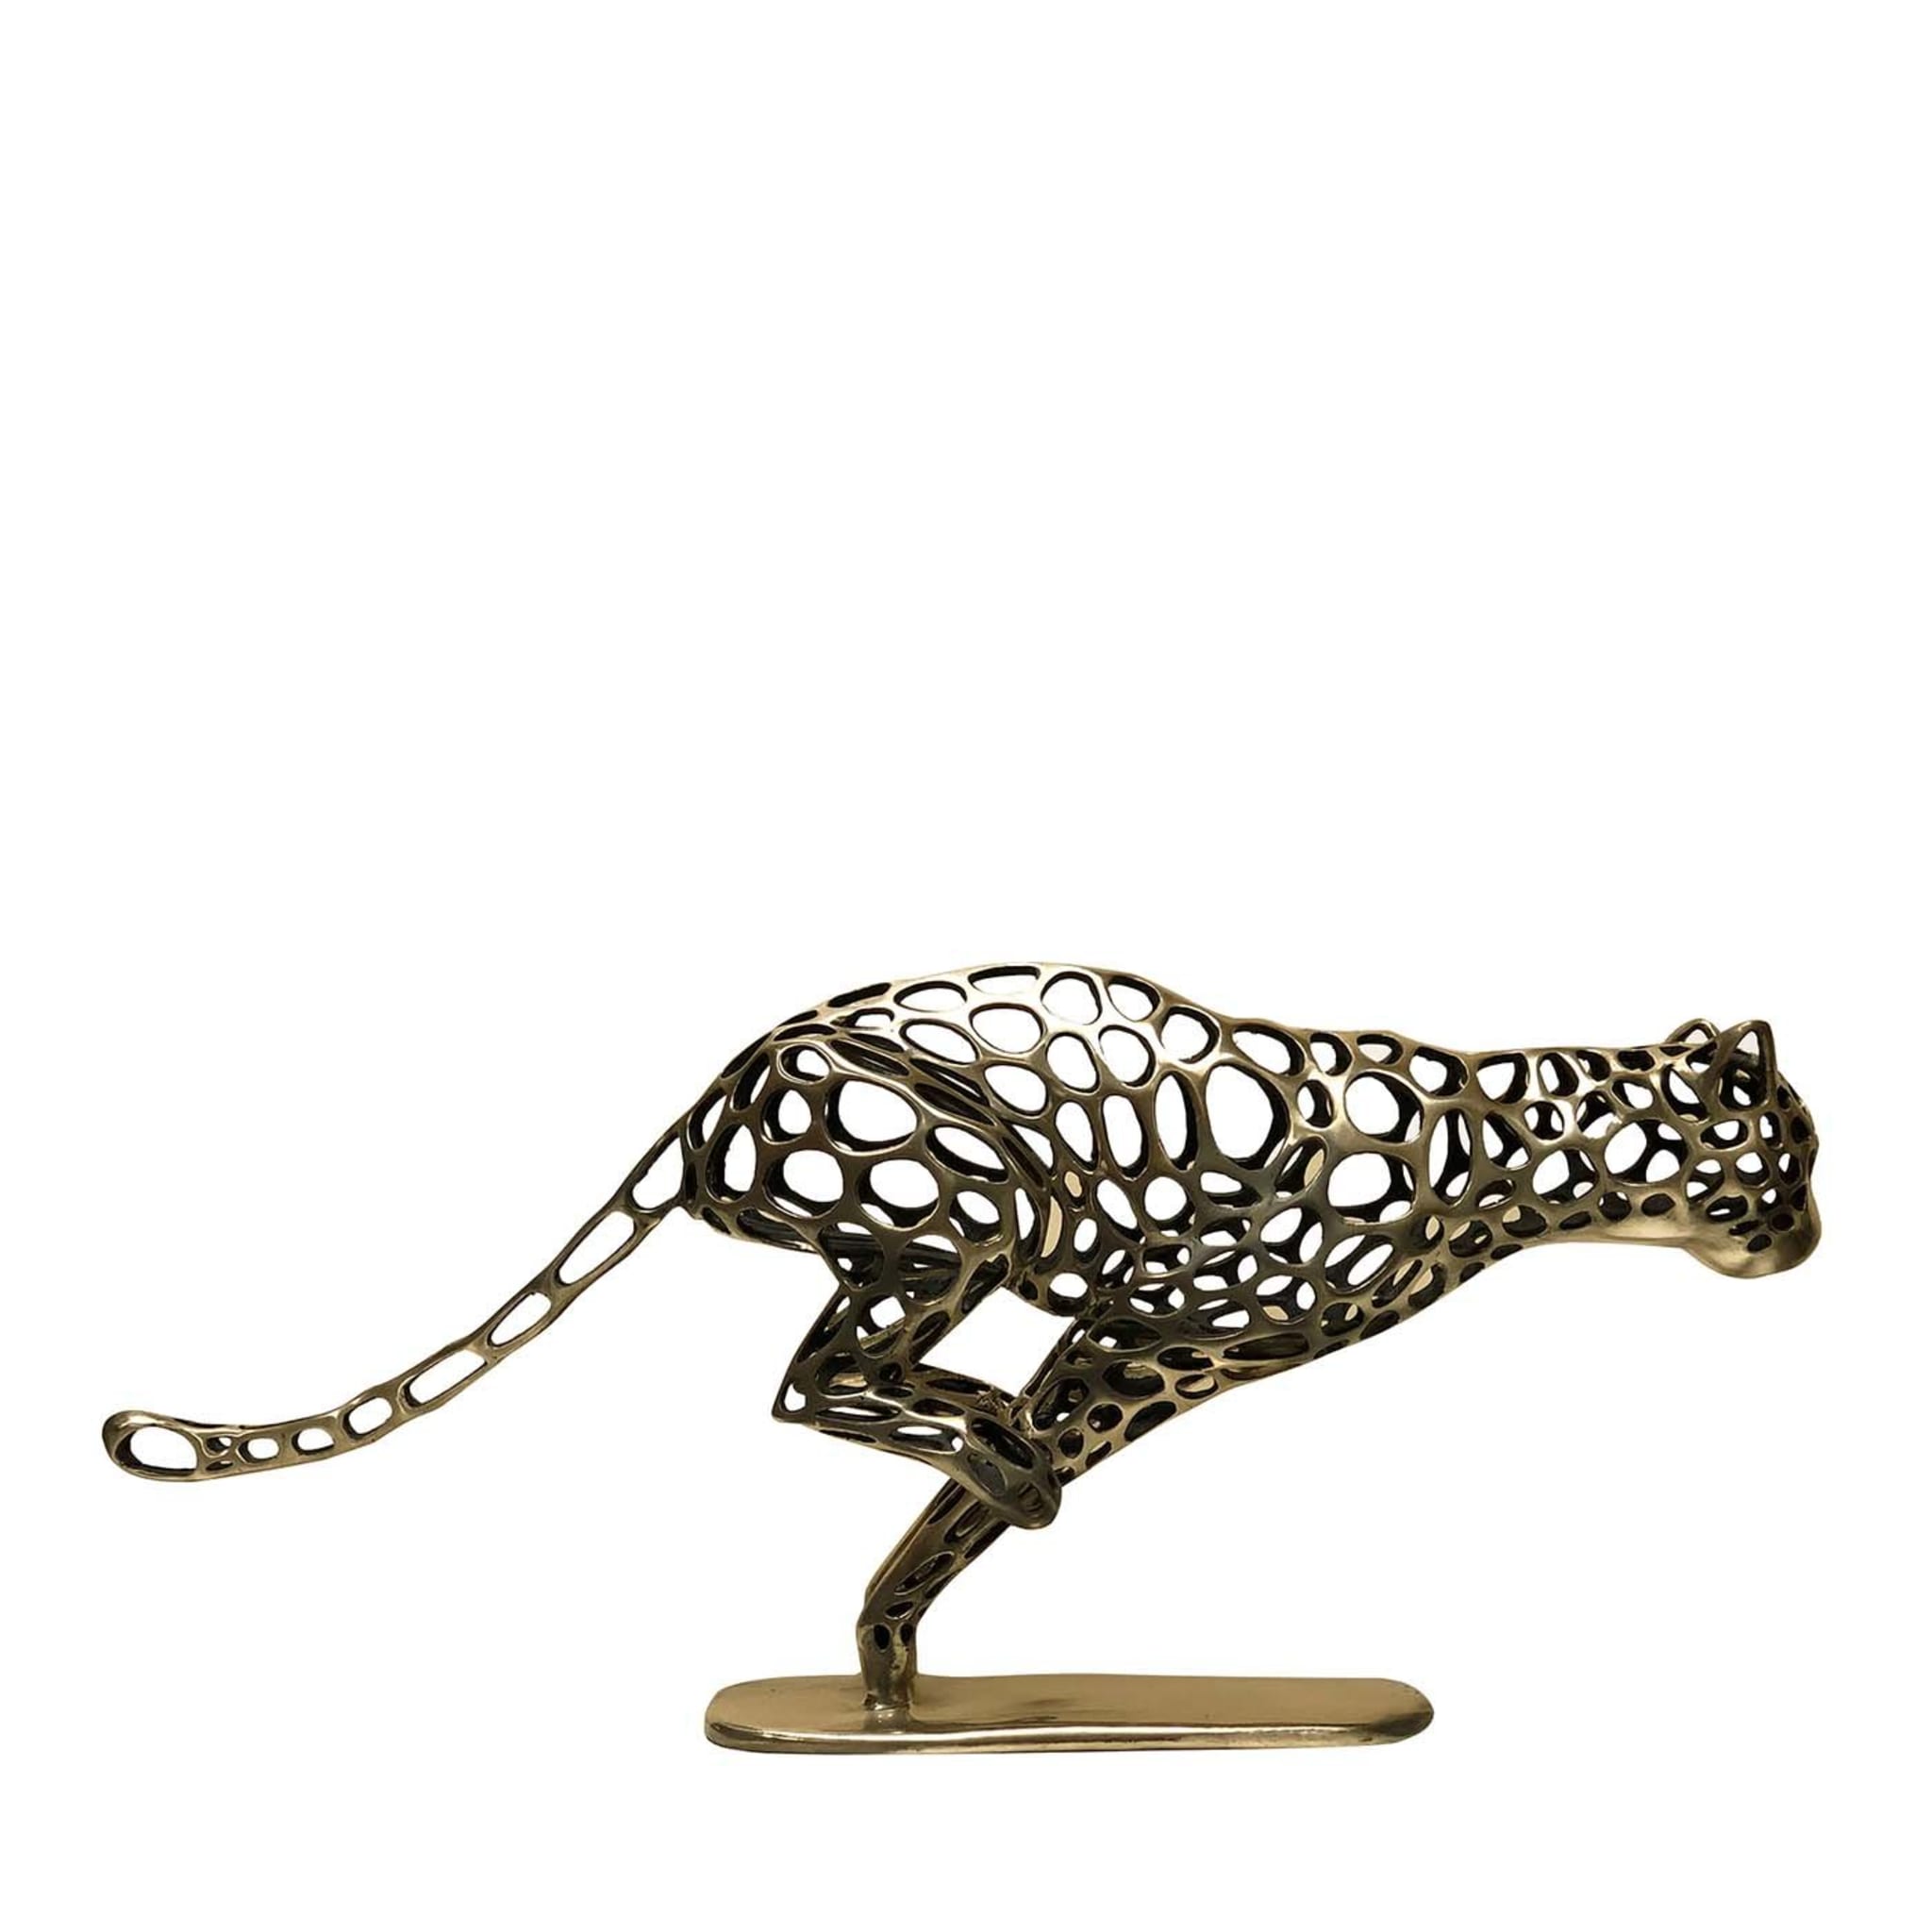 Escultura de guepardo corredor - Vista principal